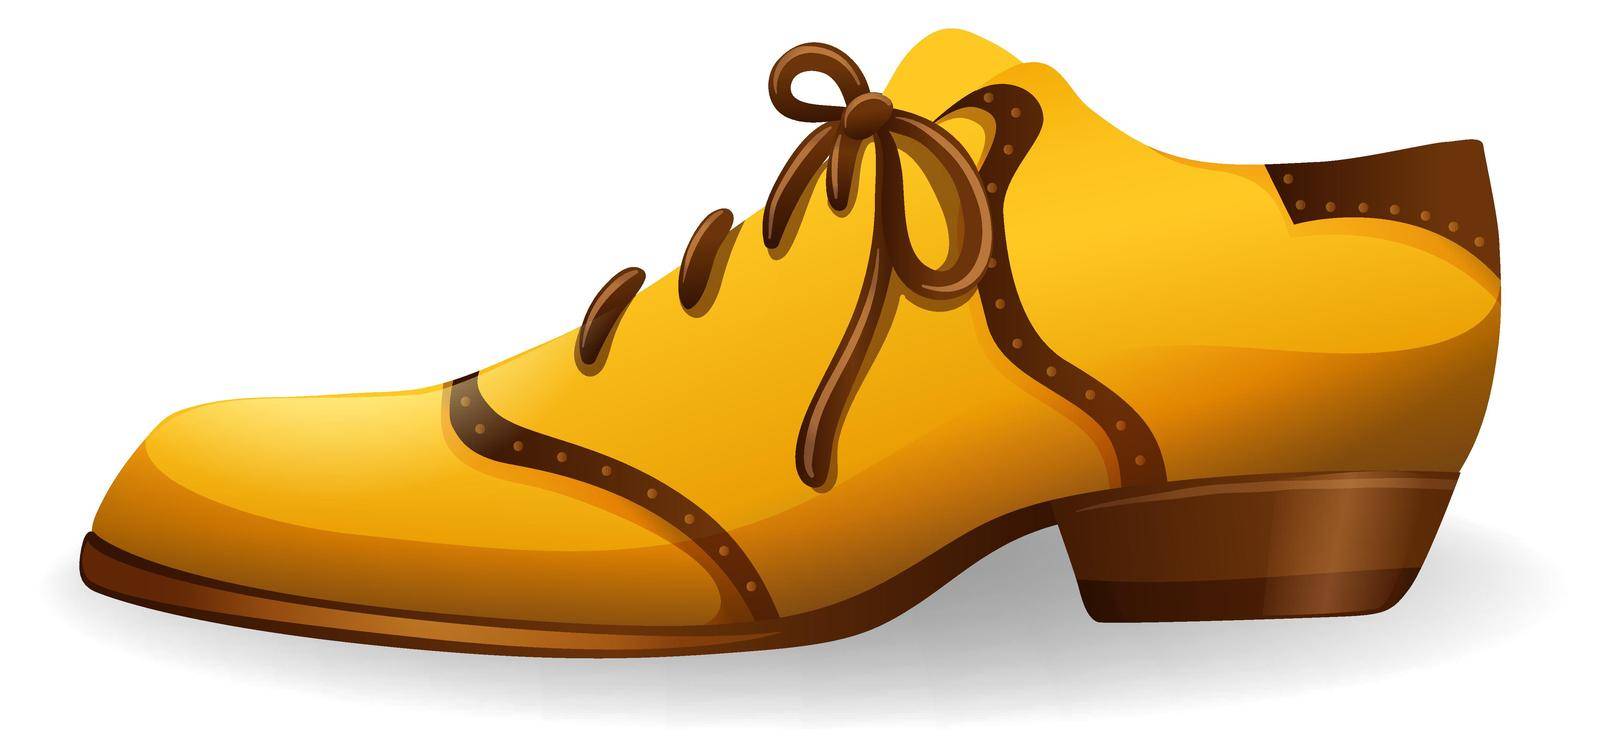 Yellow shoe by iimages